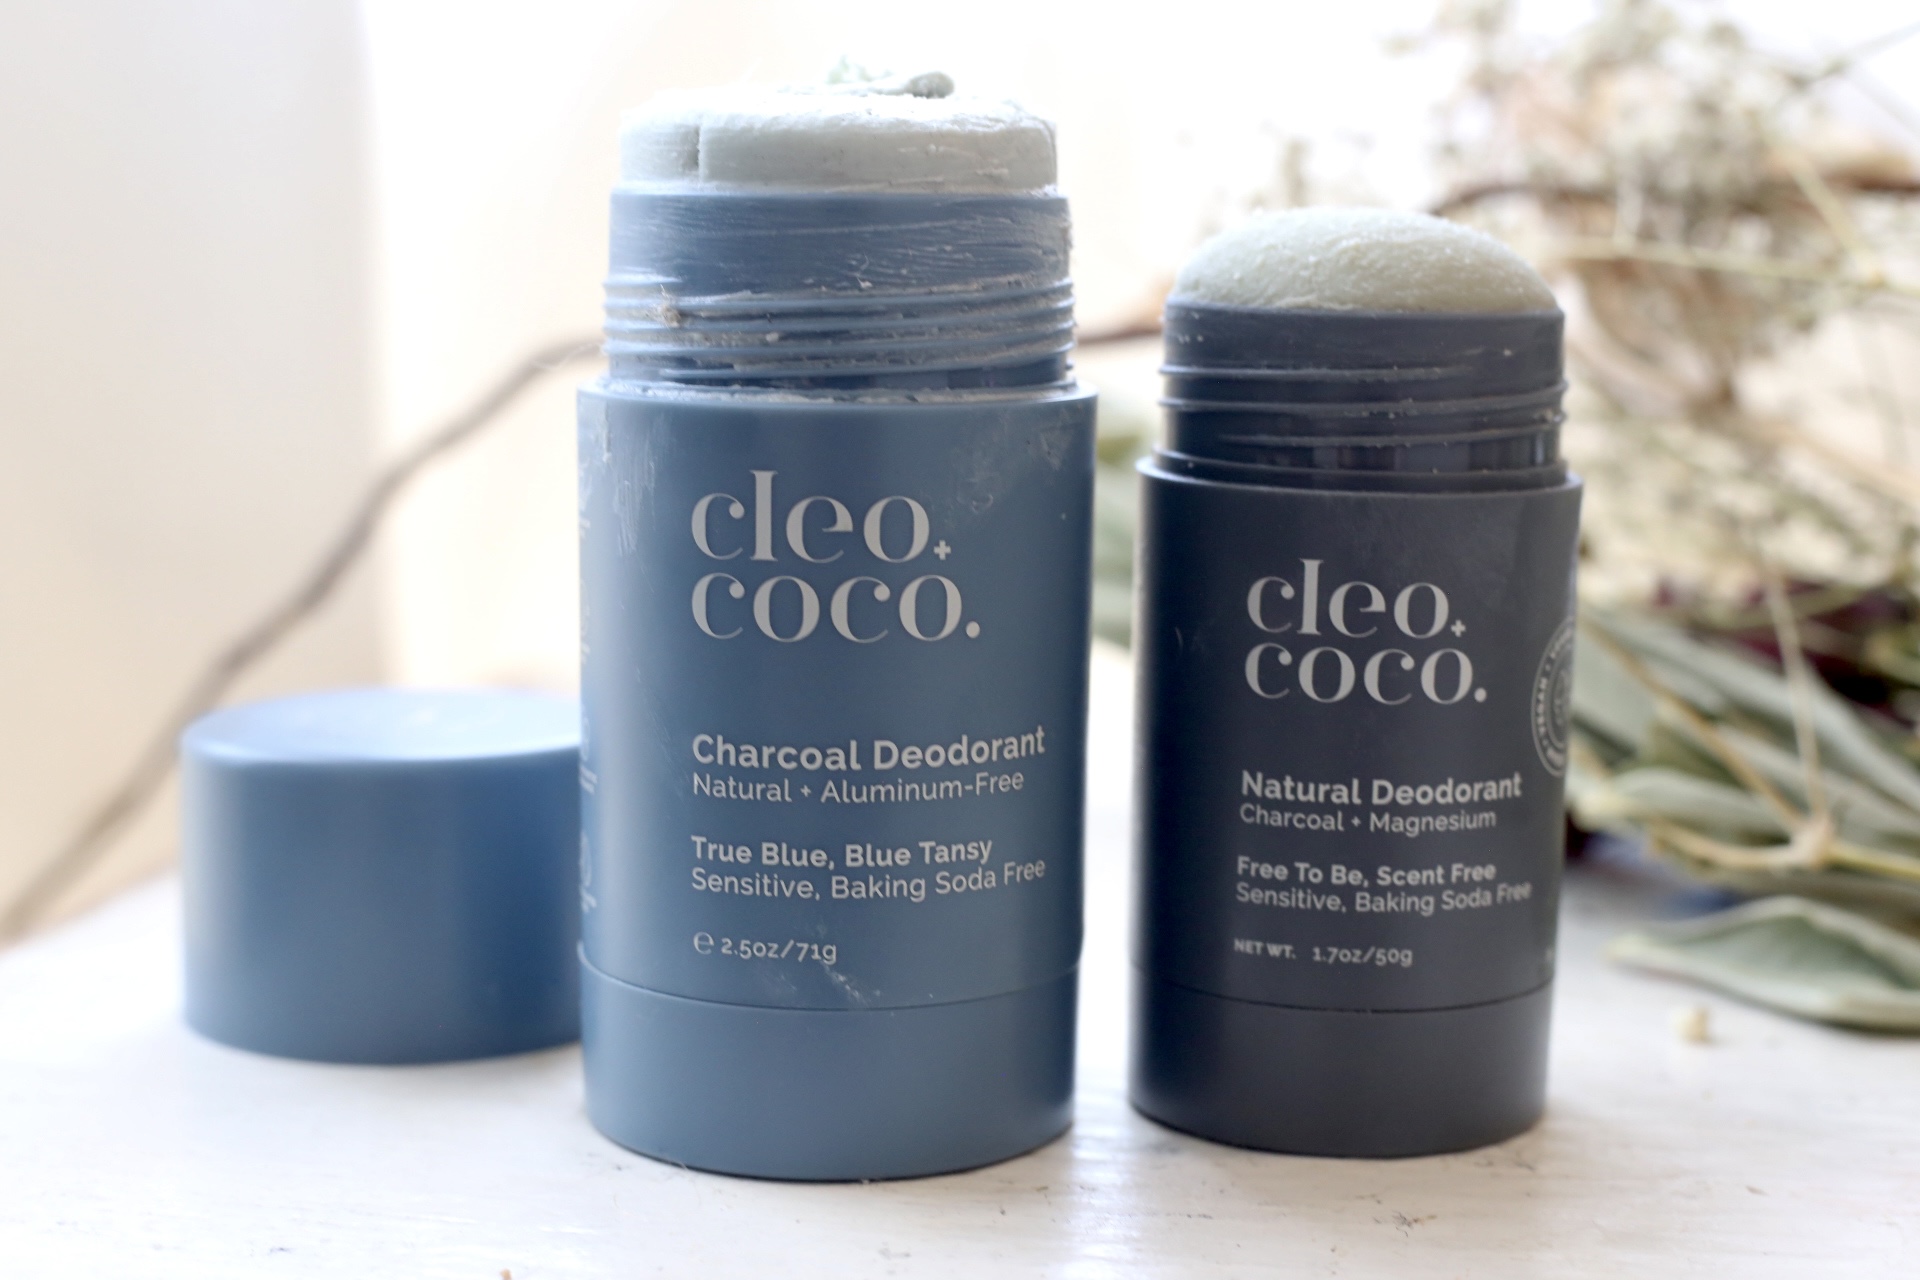 Cleo coco deodorant